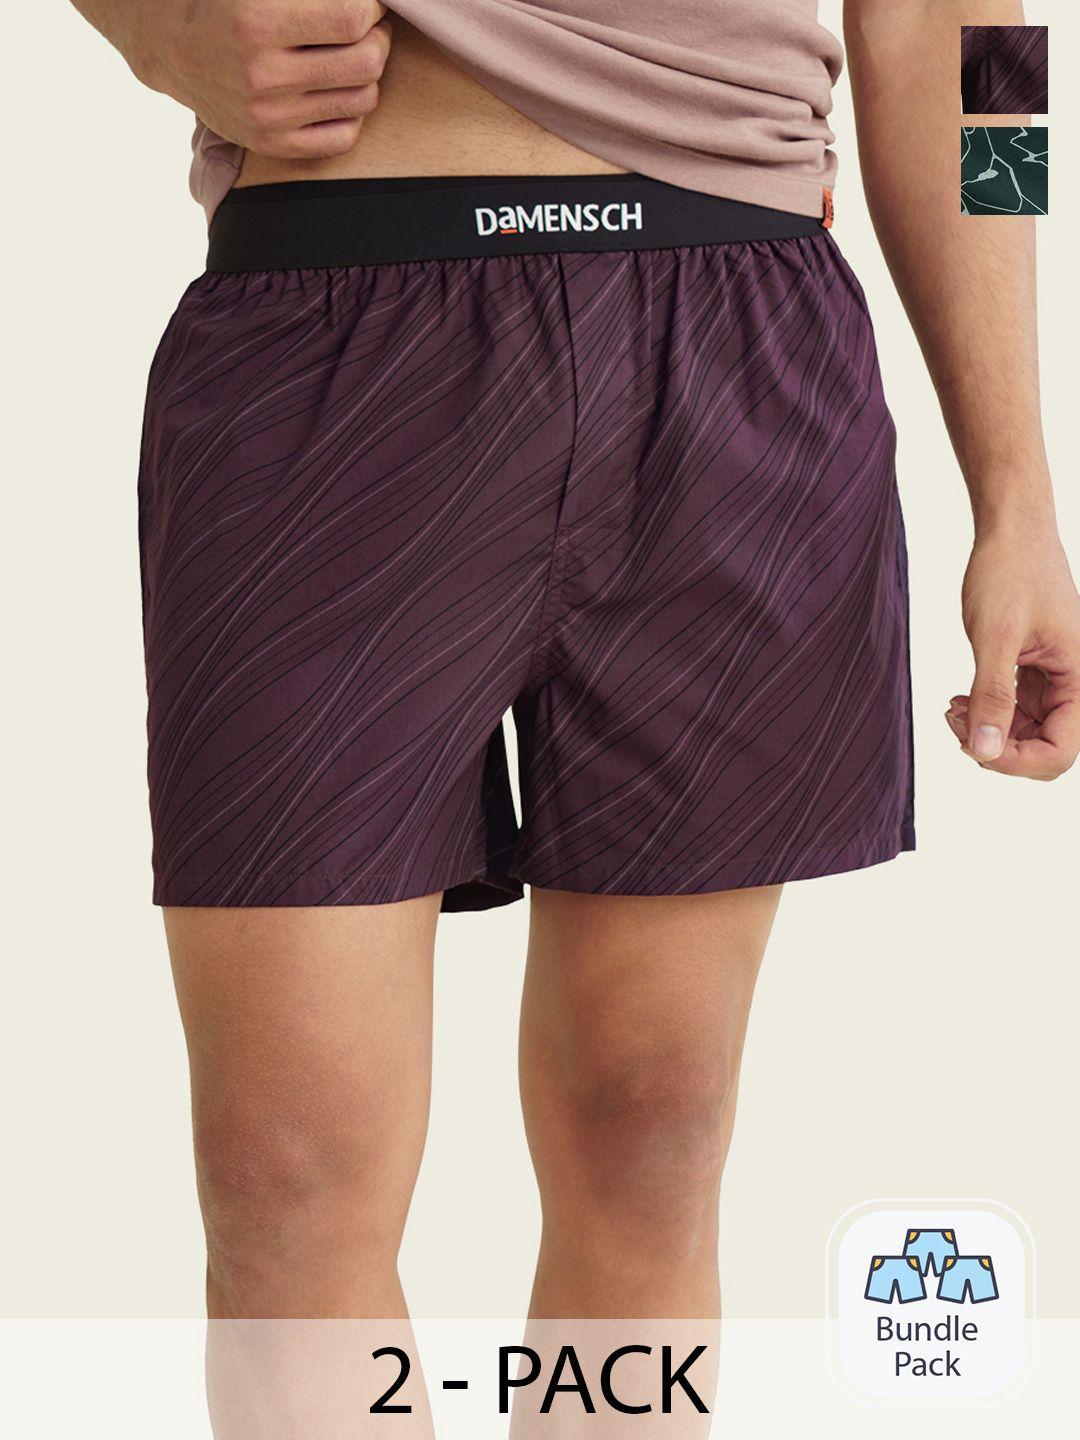 damensch men pack of 2 ultra-light cotton regular fit boxer shorts